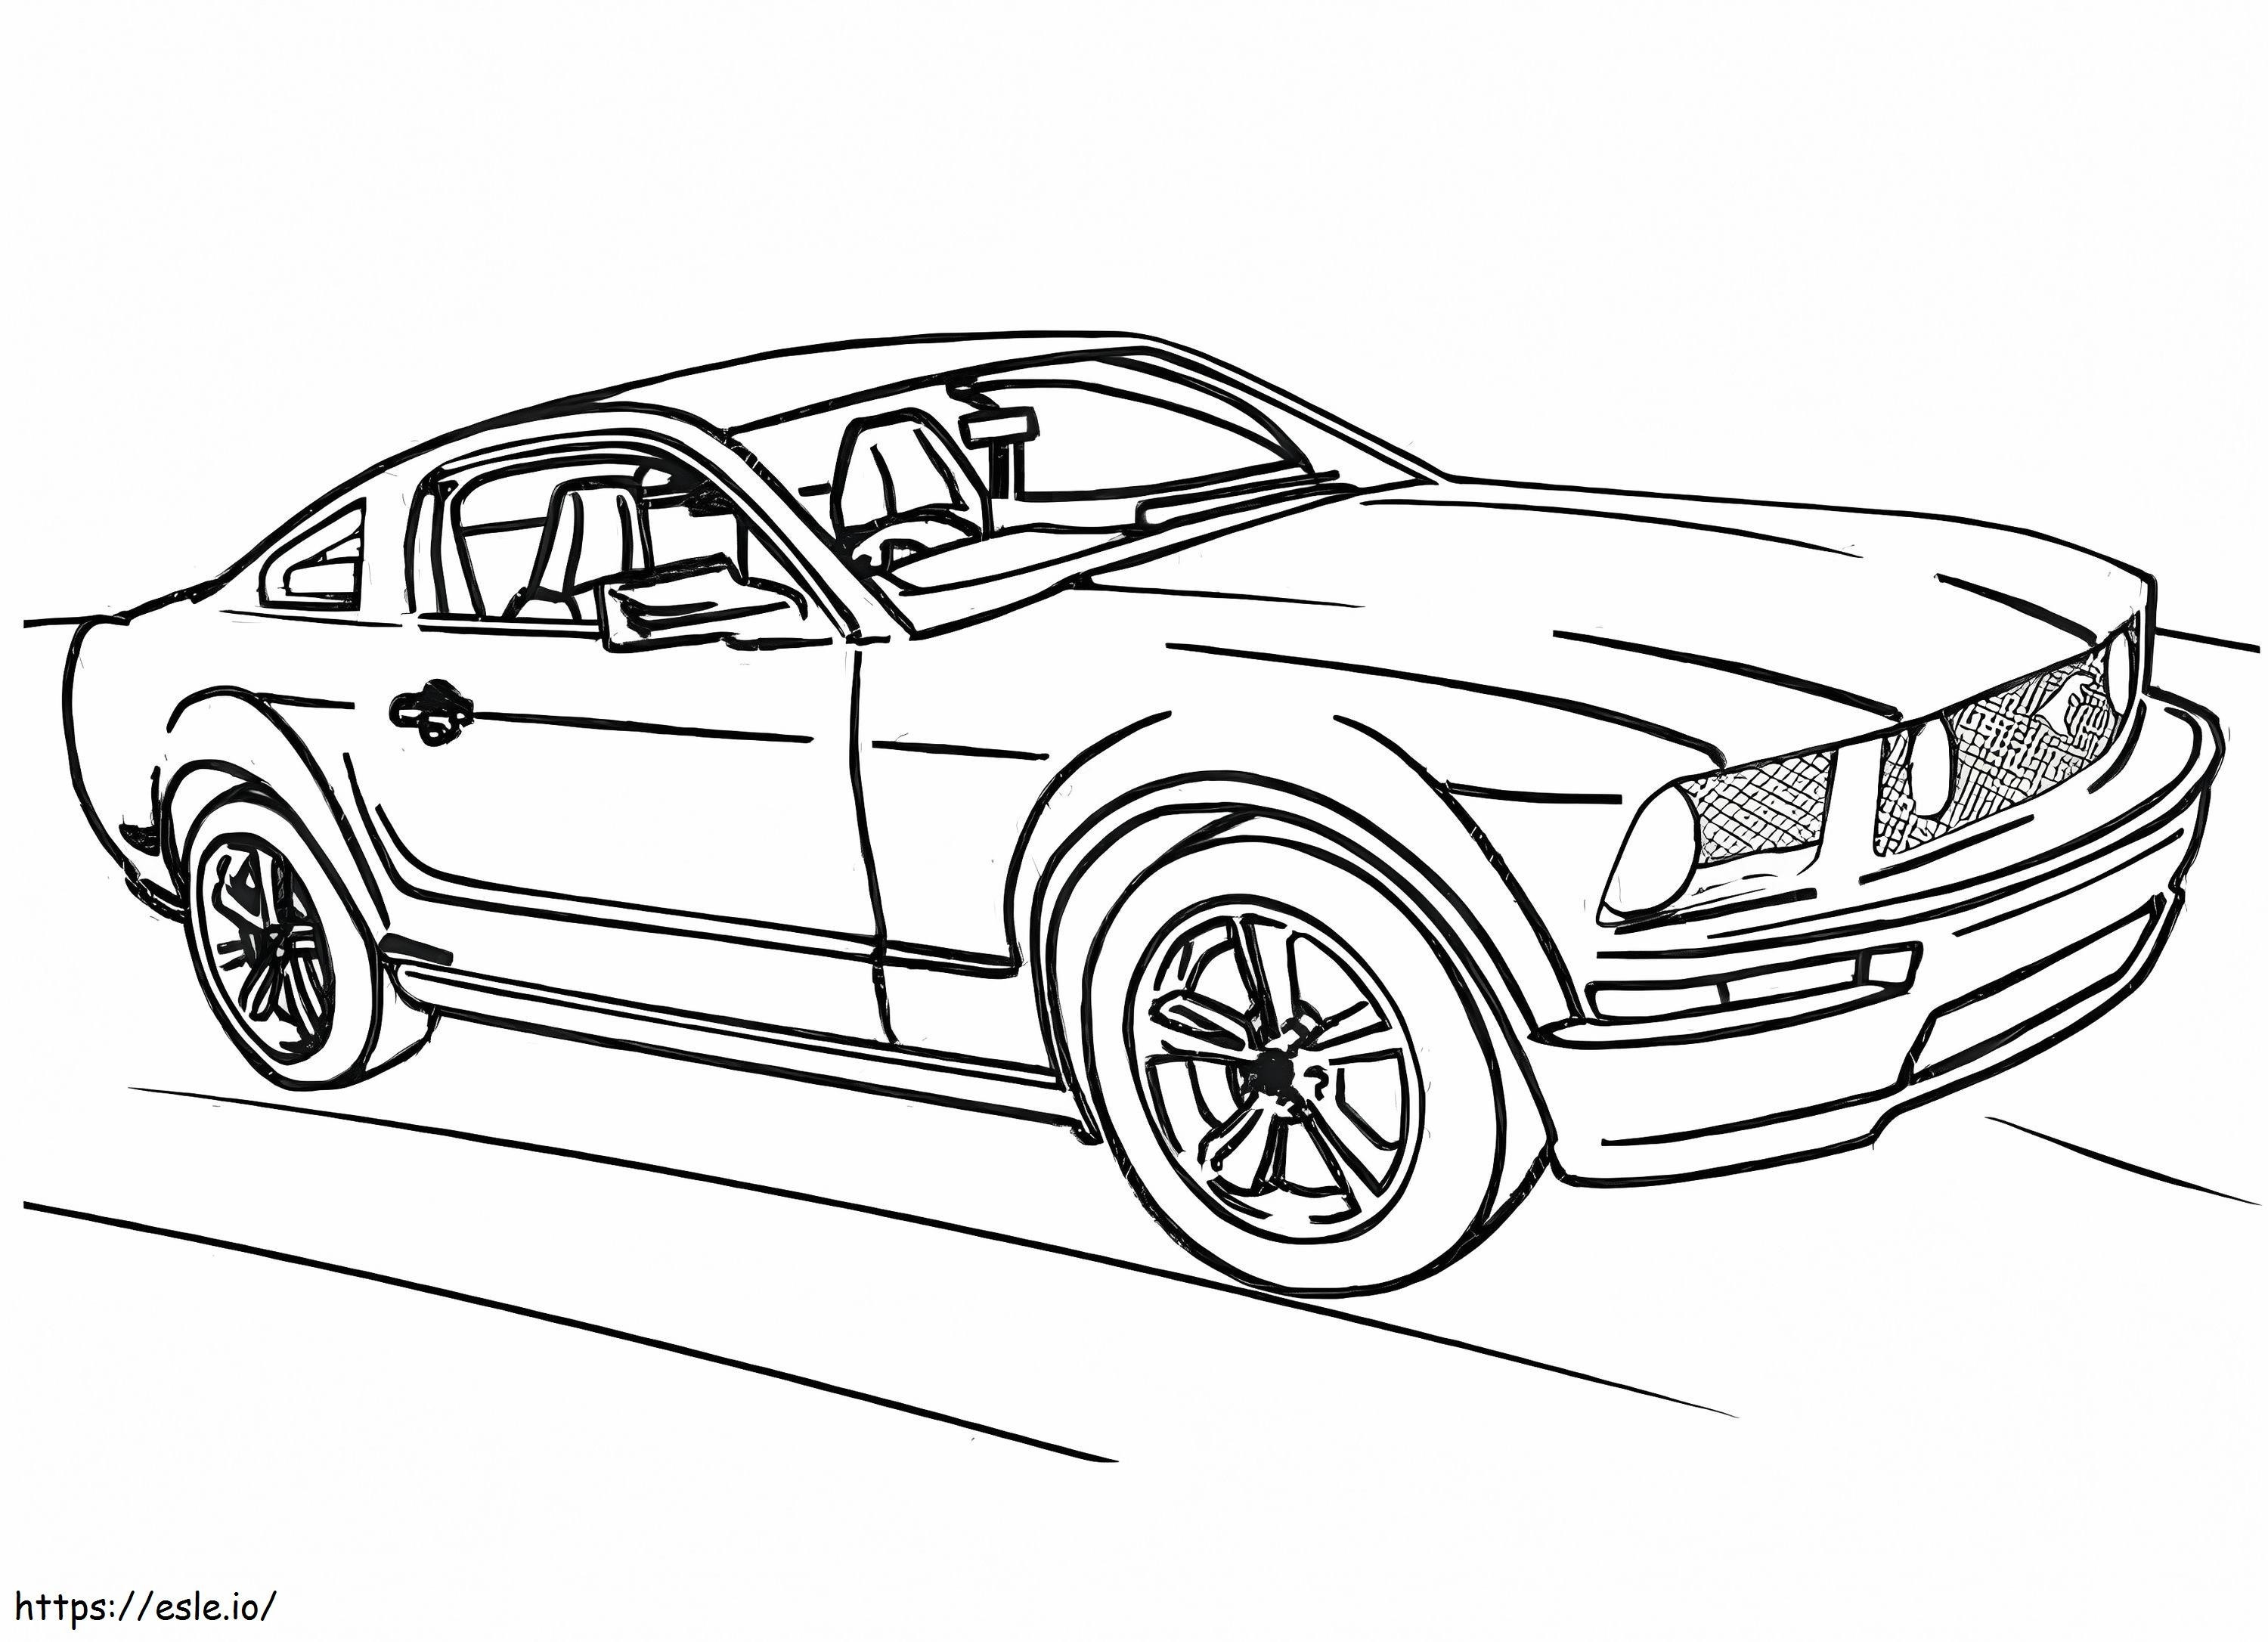 Mobil Mustang Gratis Gambar Mewarnai